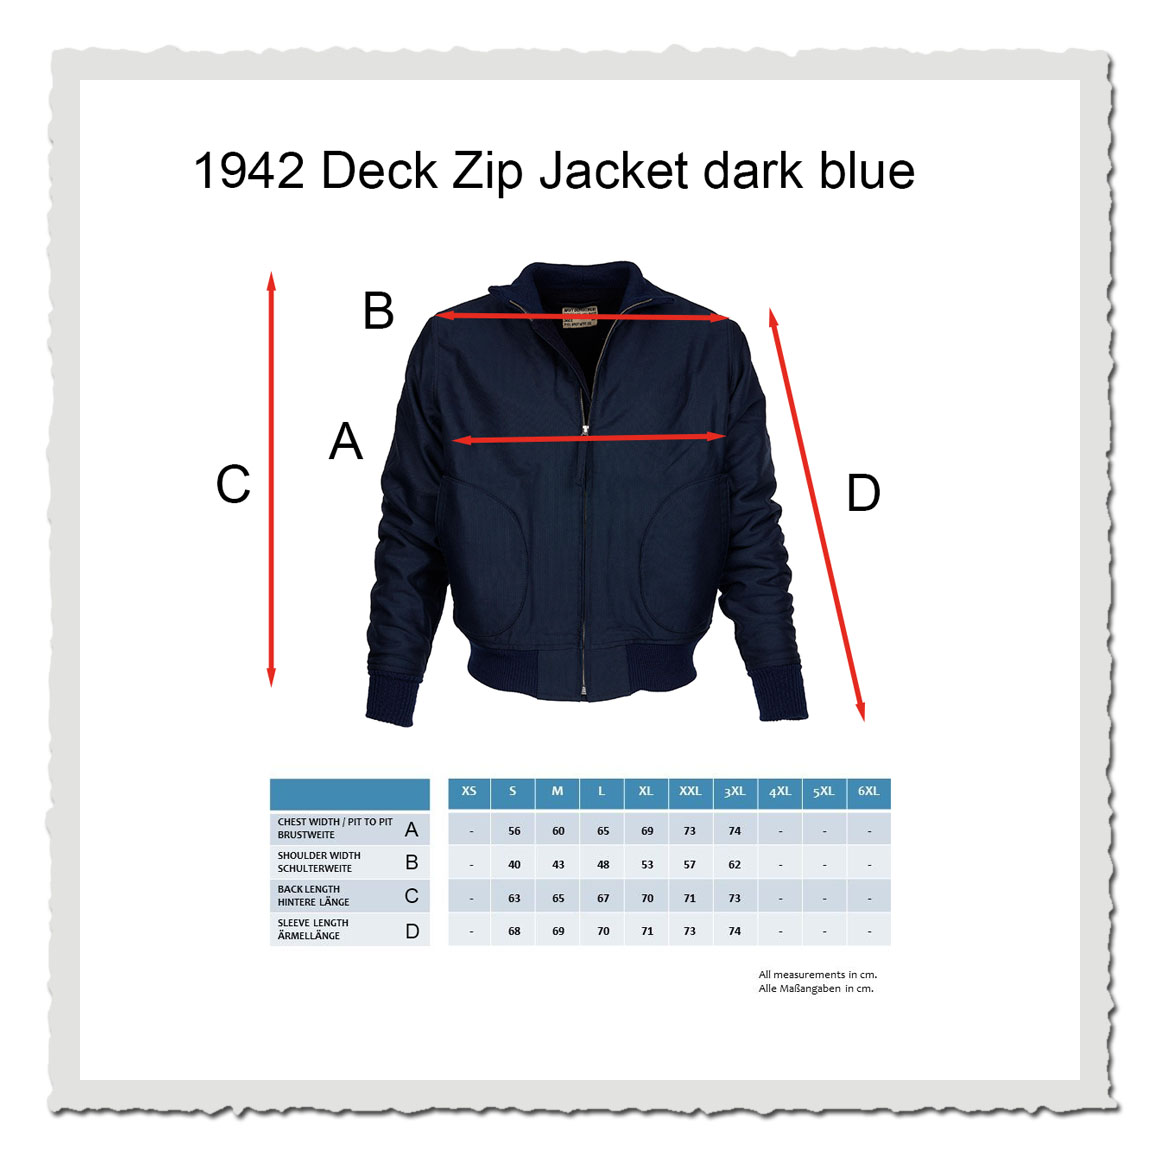 1942 Deck Zip Jacket dark blue